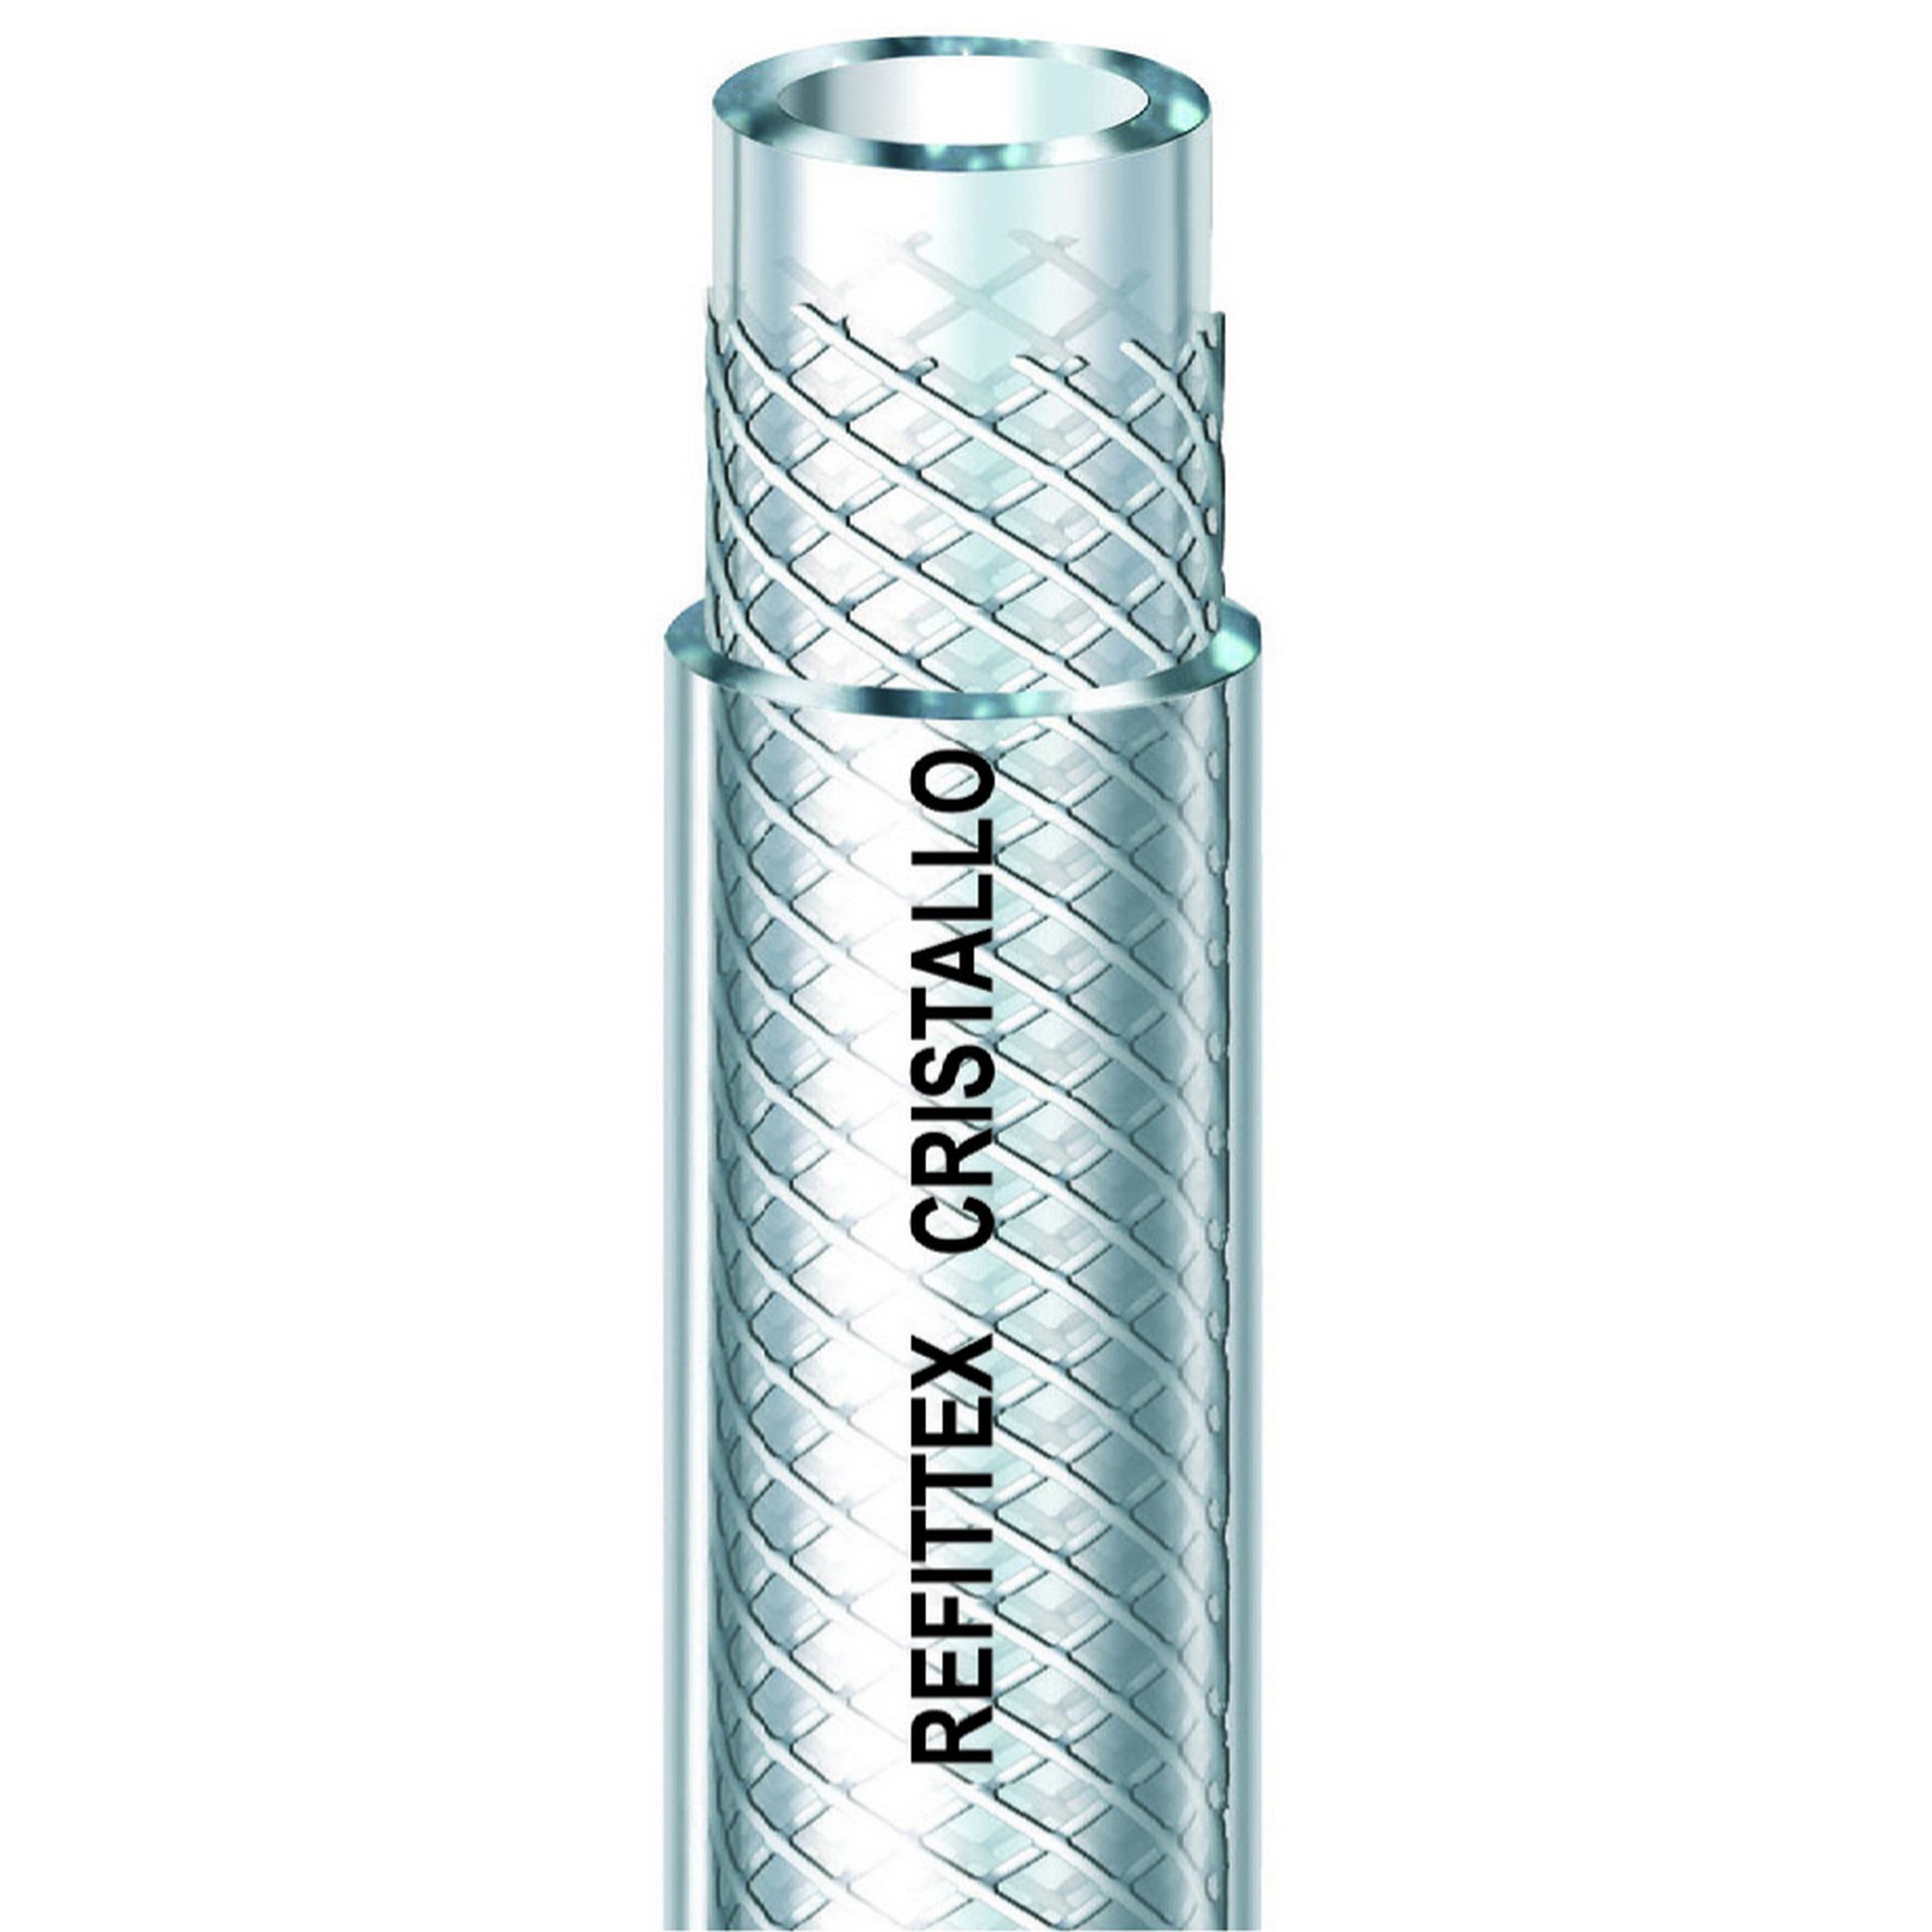 Gewebeschlauch 'Refittex Cristallo' transparent Ø 12,5 mm + product picture